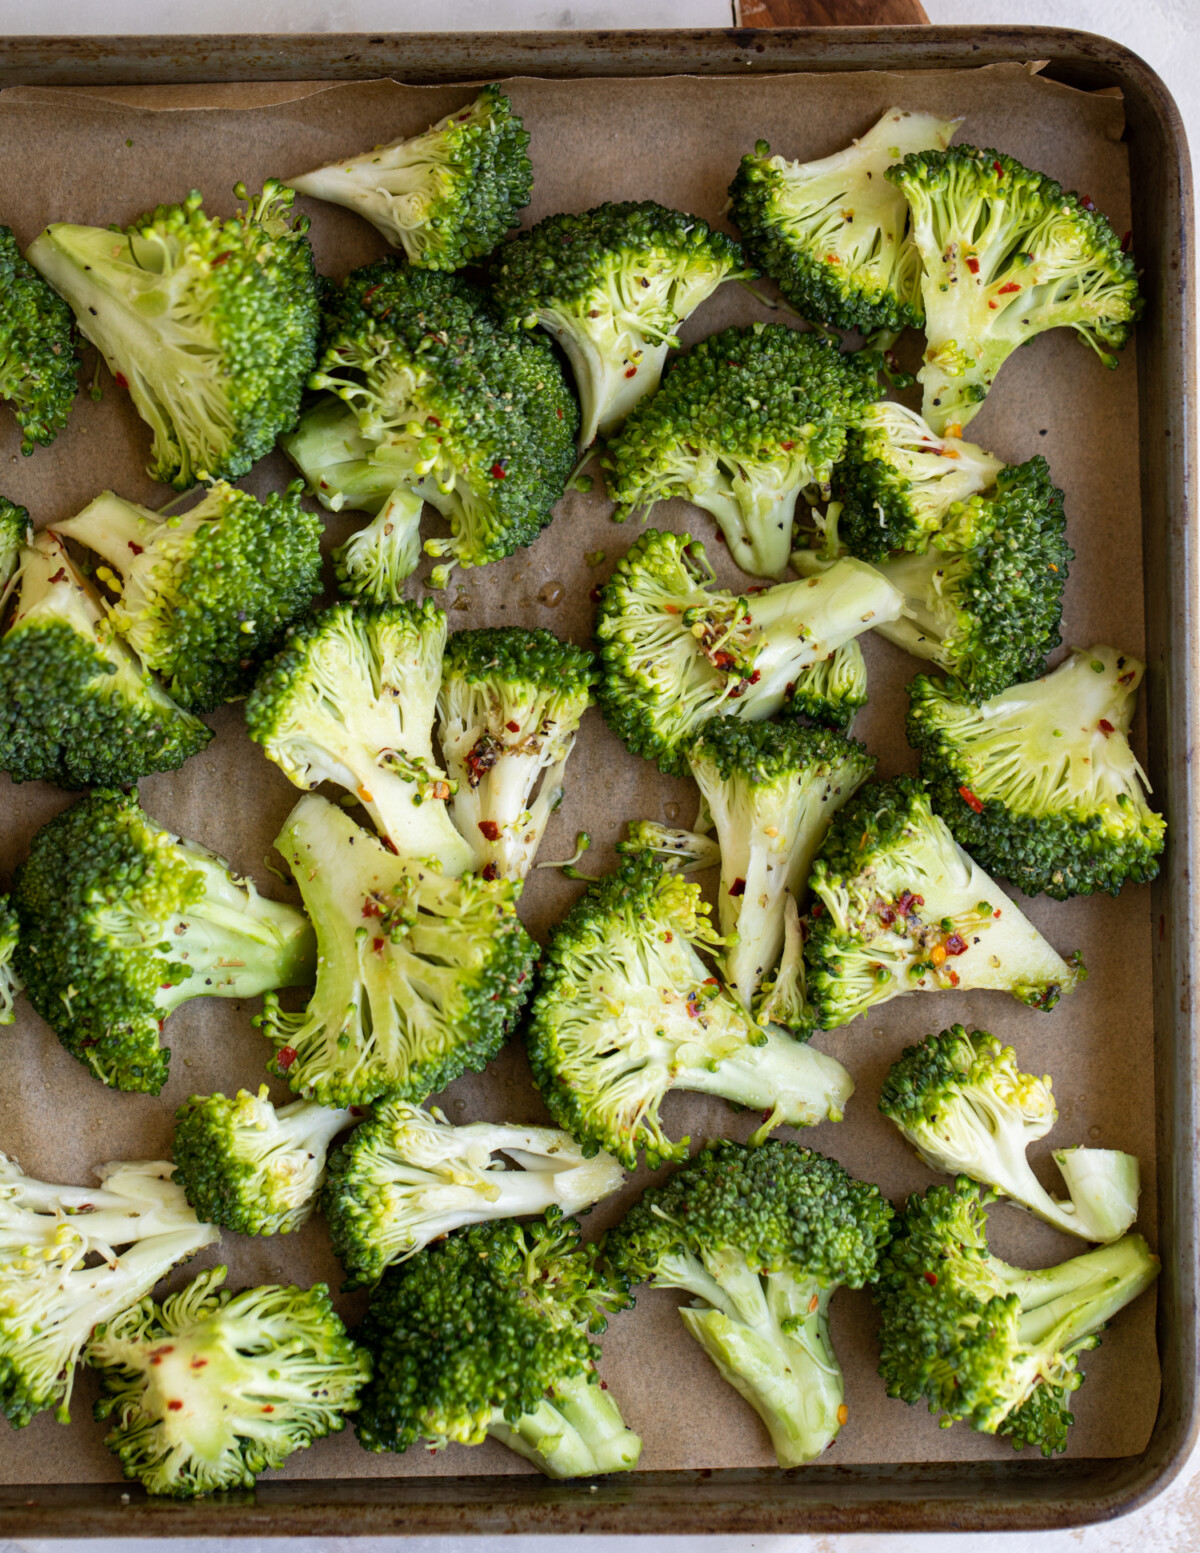 Seasoned broccoli florets on a sheet pan.